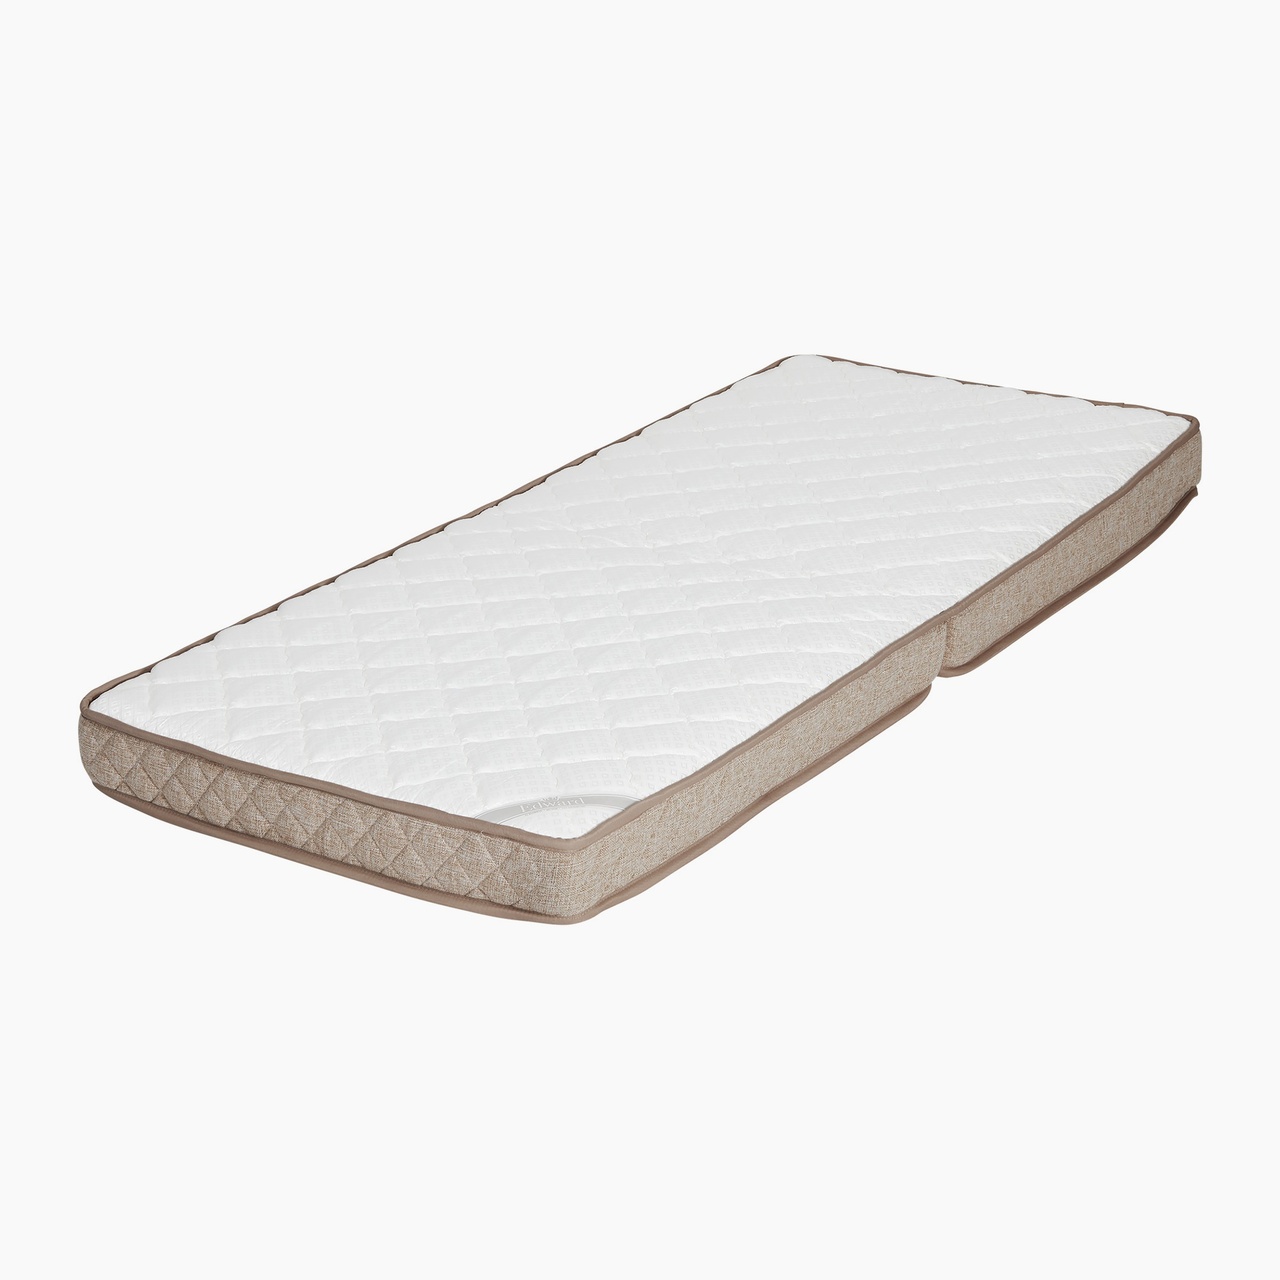 Replacement mattress for Ritz Pocket. Medium firm.Tan